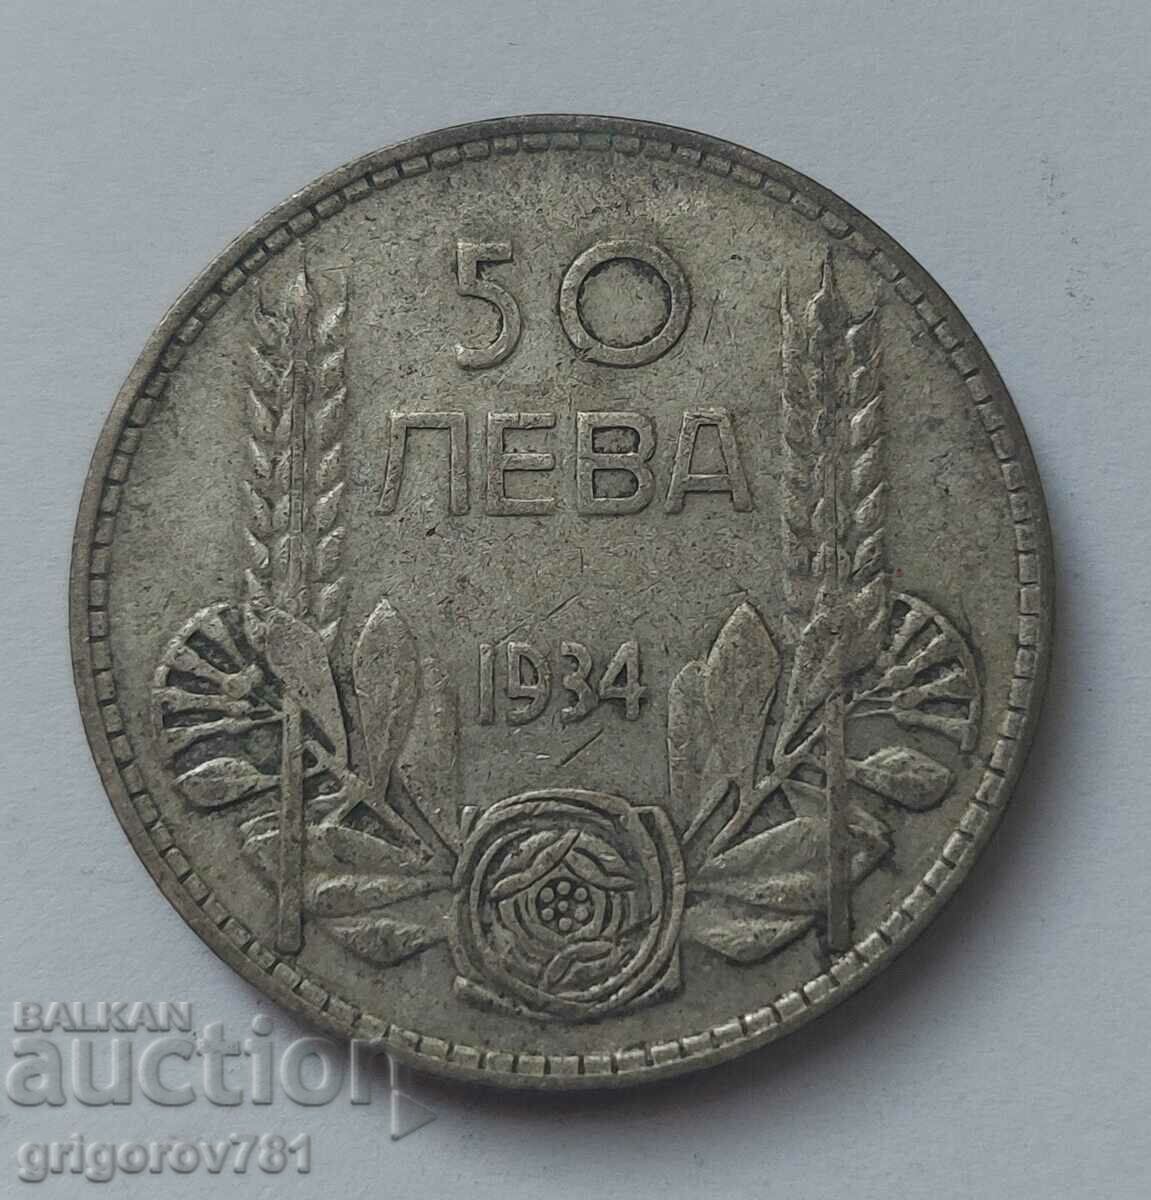 50 leva silver Bulgaria 1934 - silver coin #23